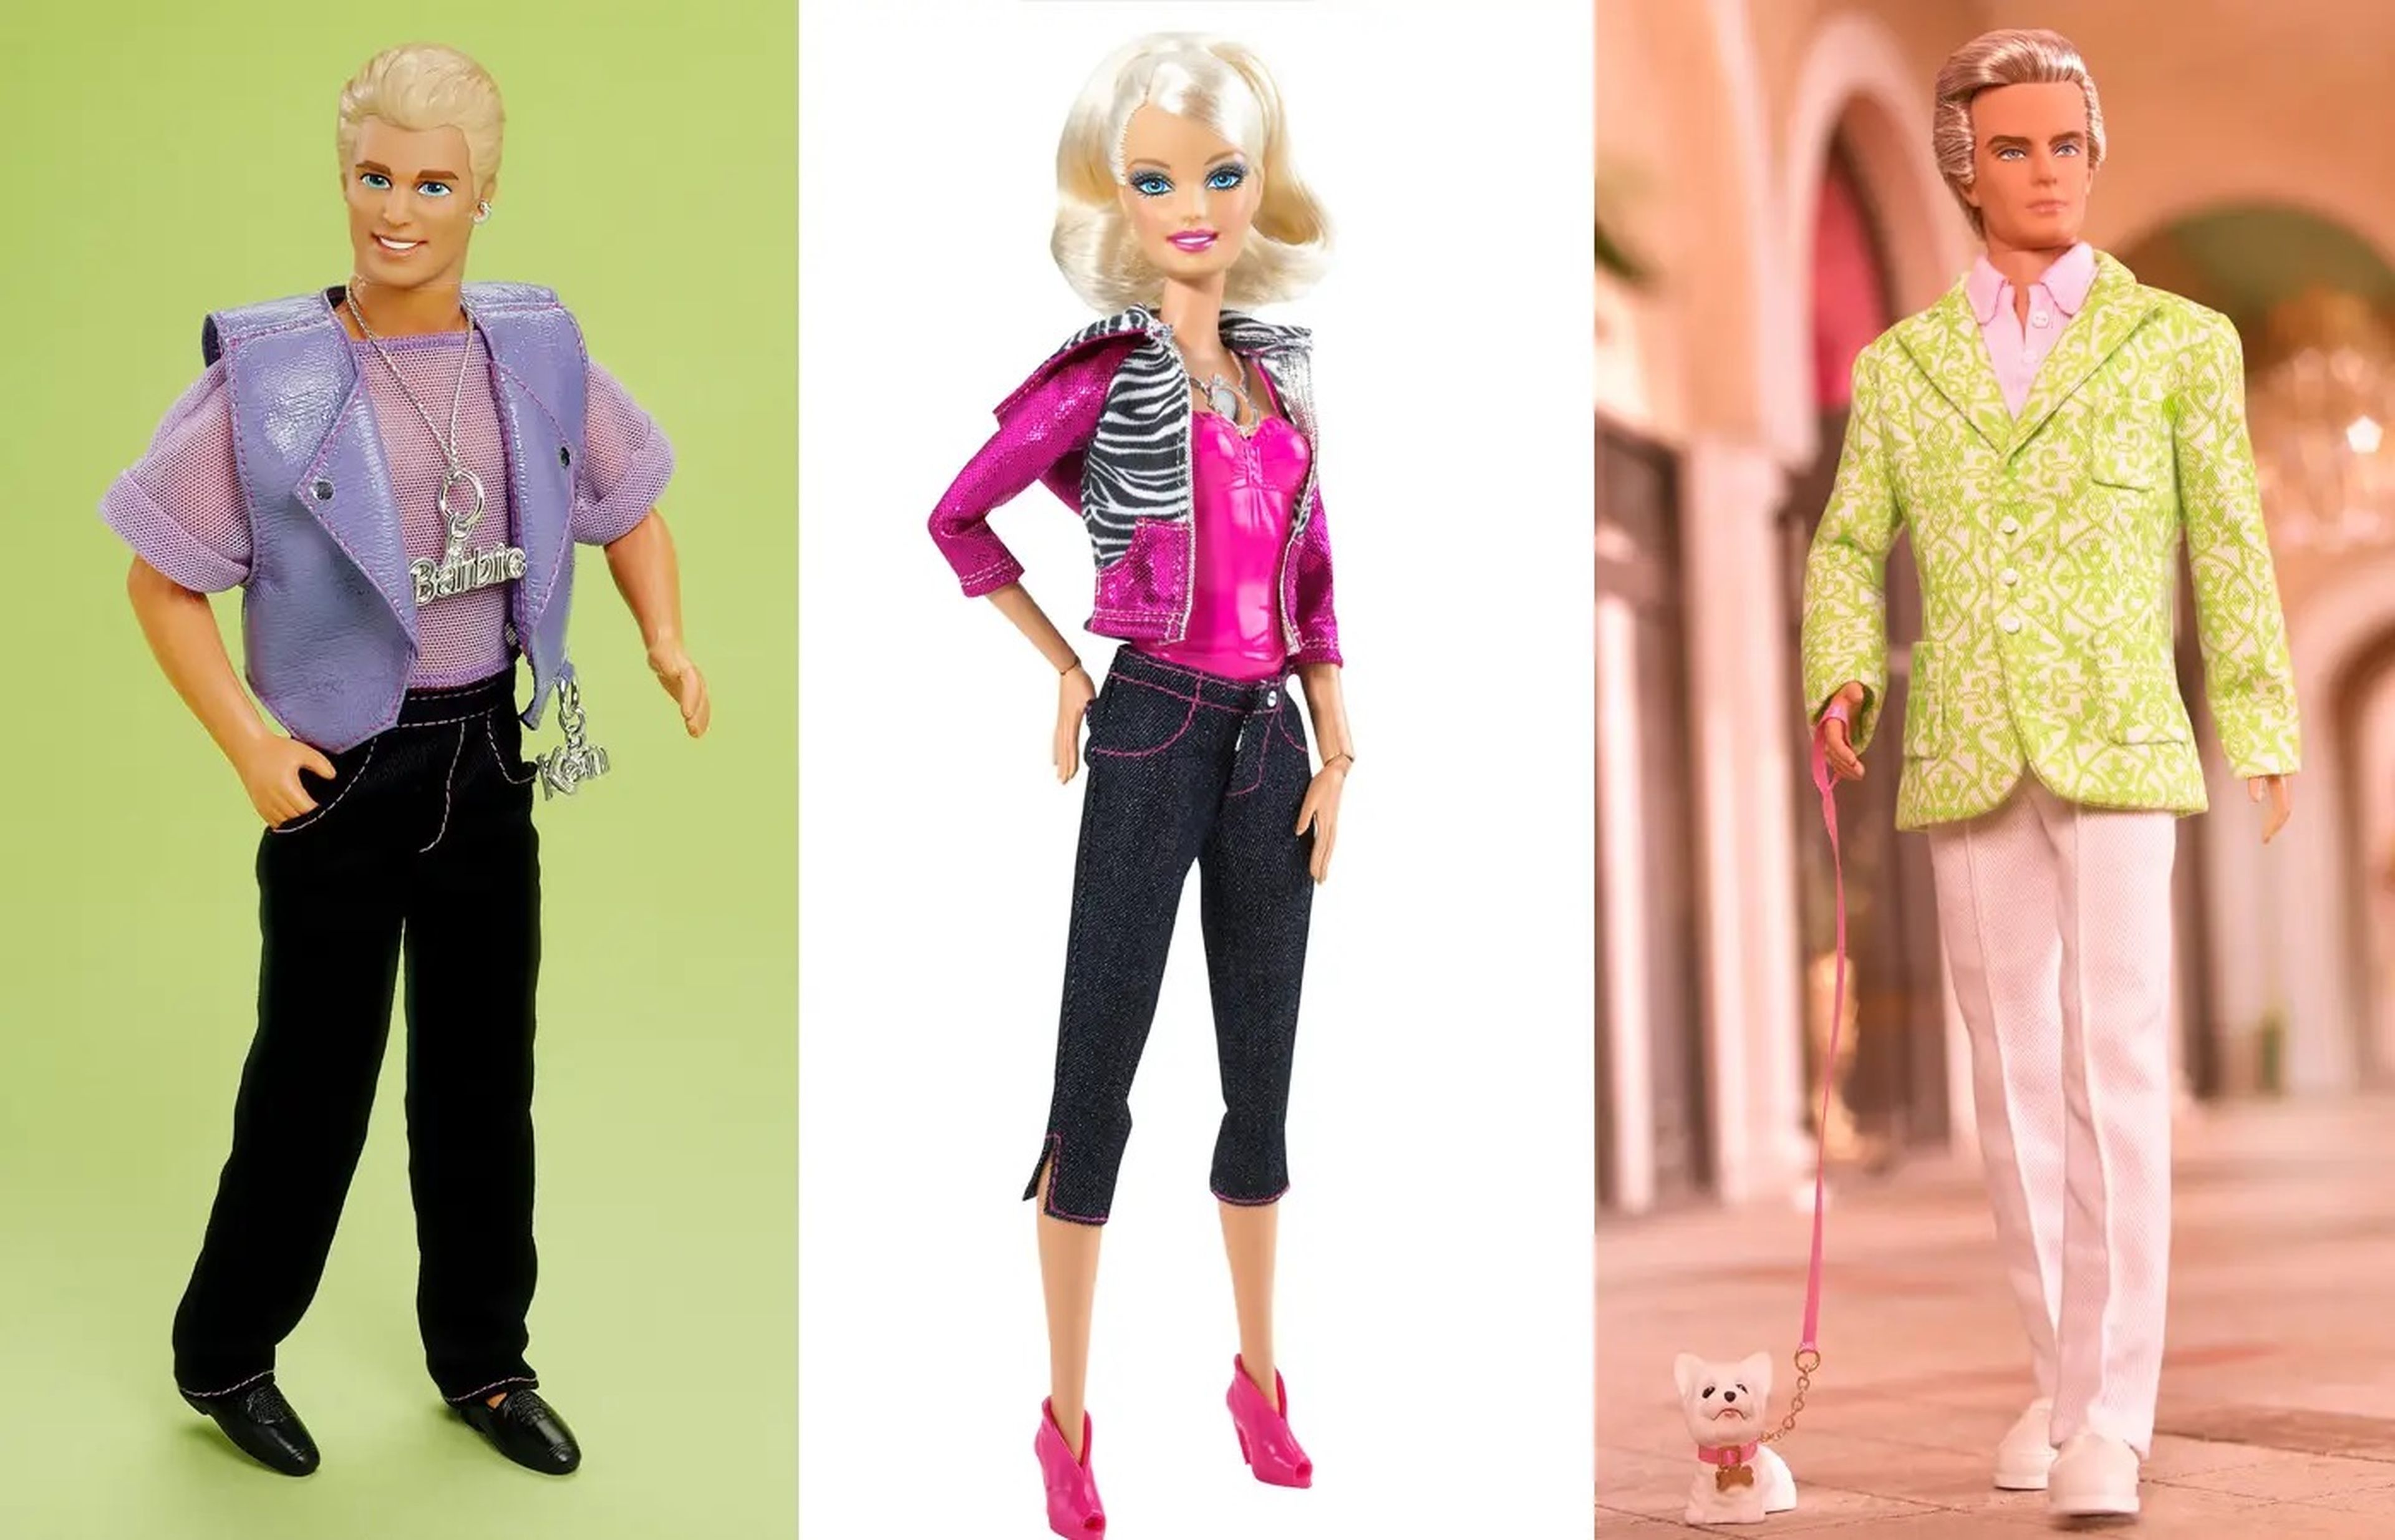 De izquierda a derecha: Earring Magic Ken, Video Girl Barbie y Sugar Daddy Ken.